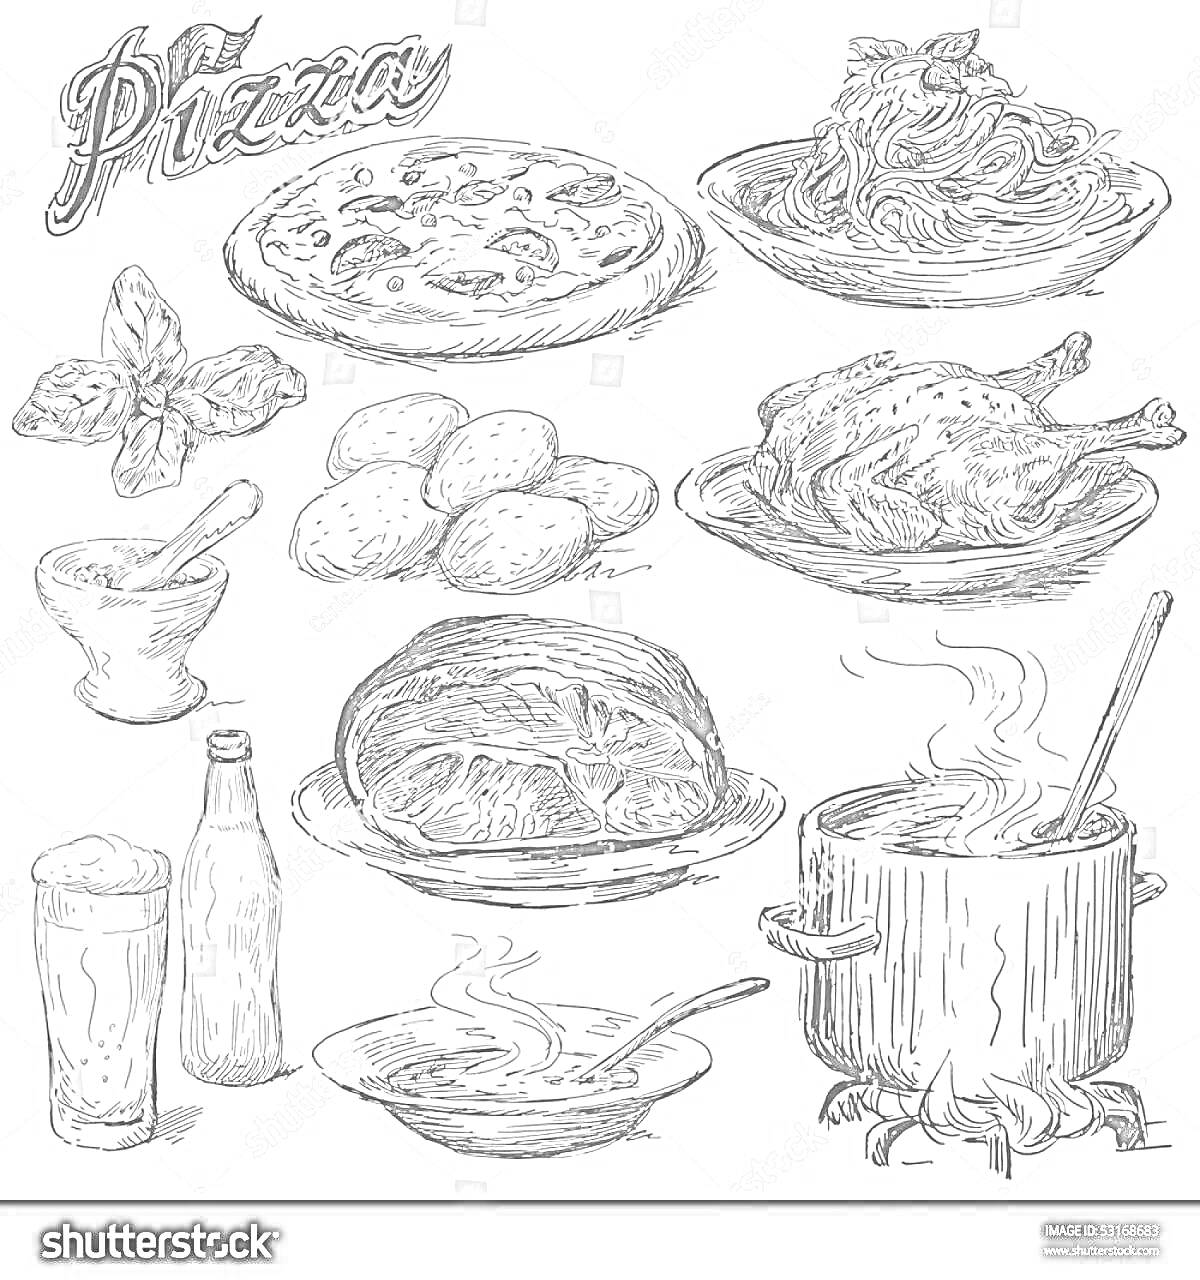 Раскраска Пицца с начинкой, макароны с грибами, фрикадельки с базиликом, жареный цыпленок, стакан лимонада и бутылка, свежий хлеб, тарелка супа с ложкой, кастрюля с кипящим супом